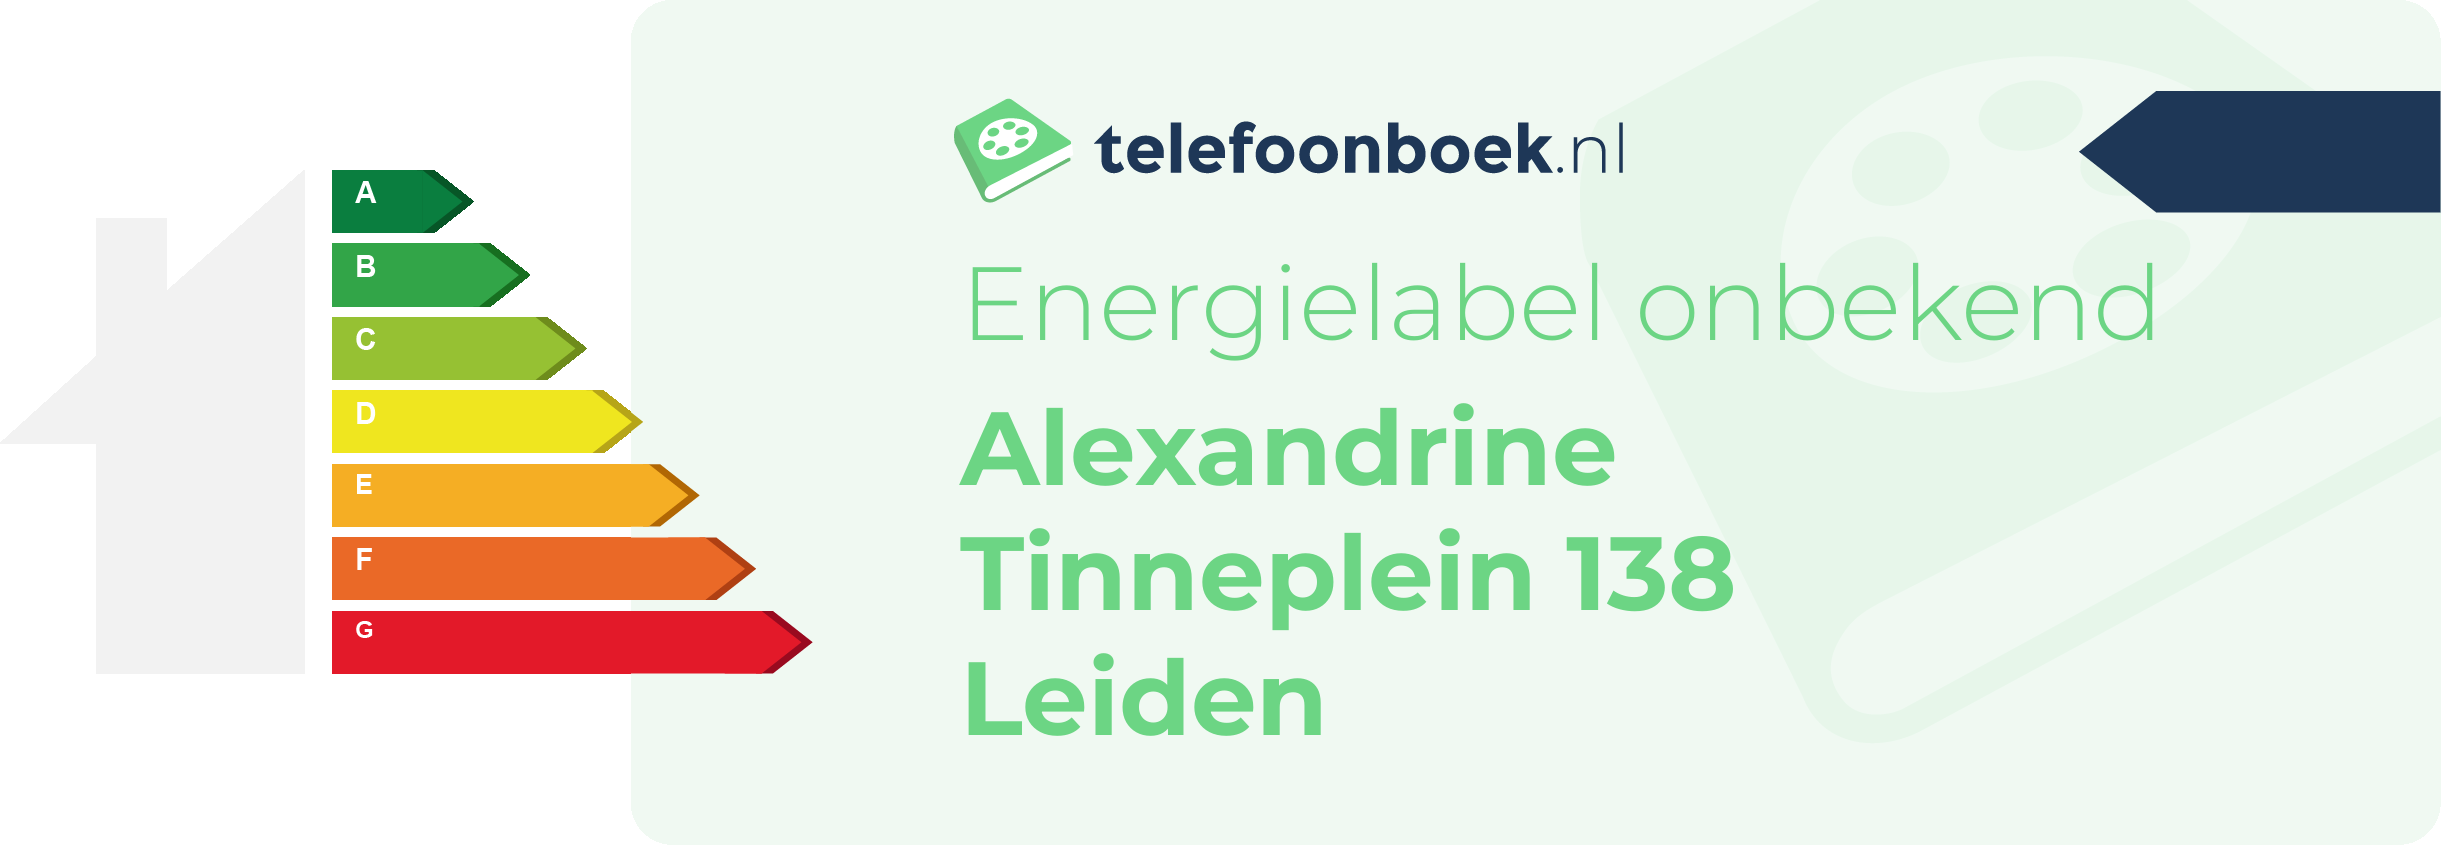 Energielabel Alexandrine Tinneplein 138 Leiden